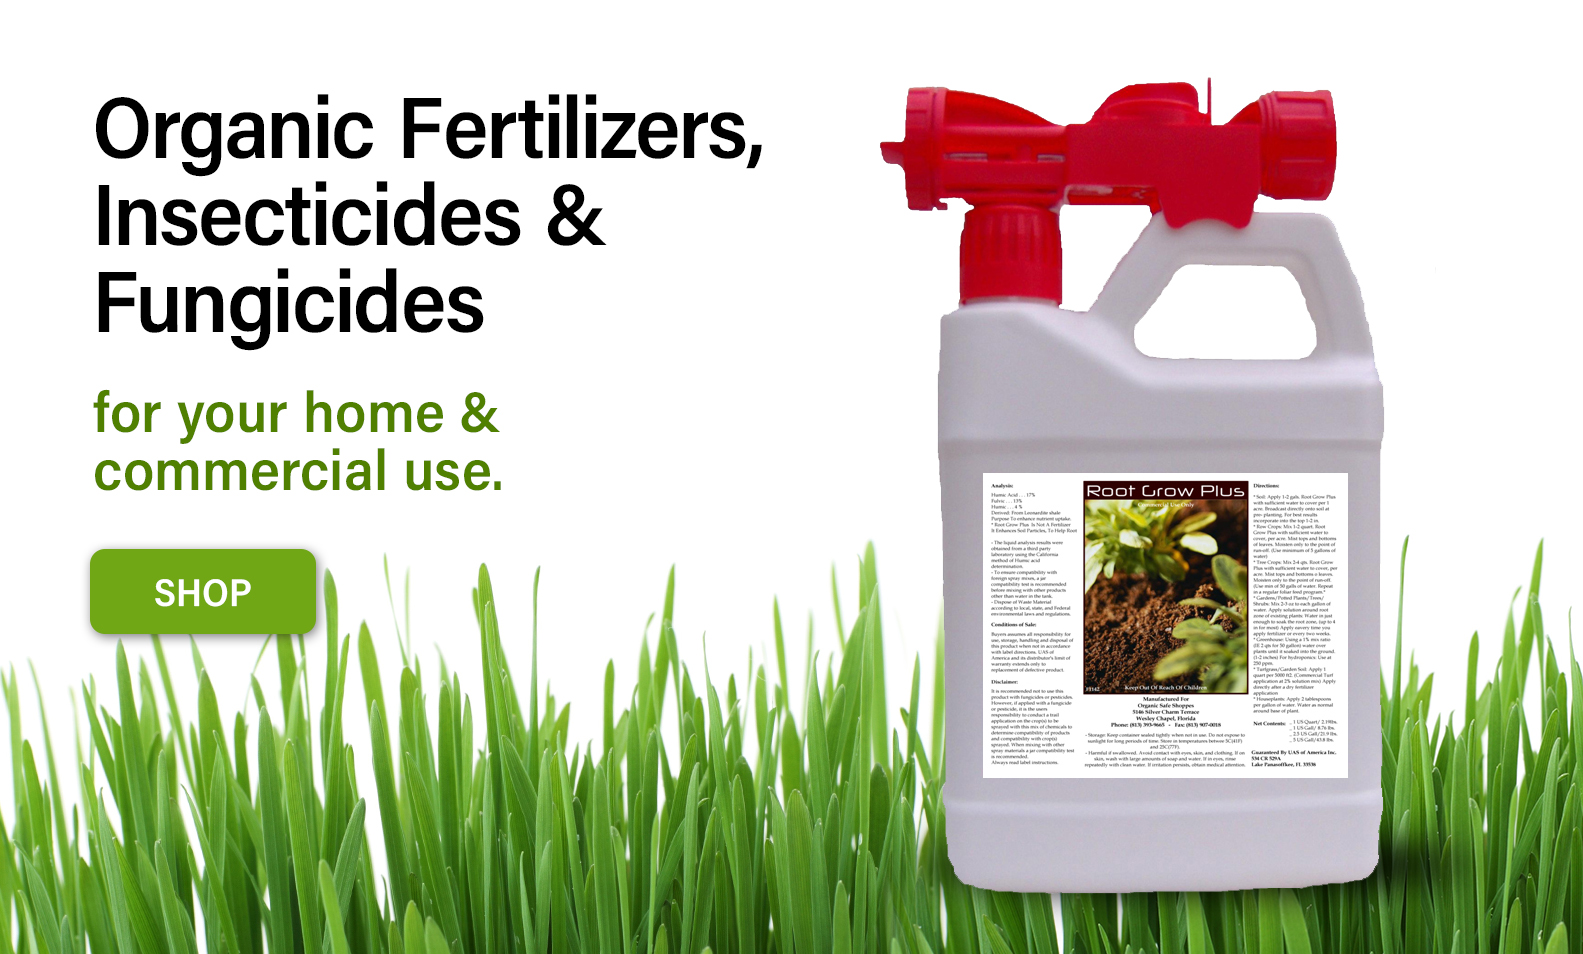 organic fertilizers fungicides organic safe shoppes wesley chapel florida